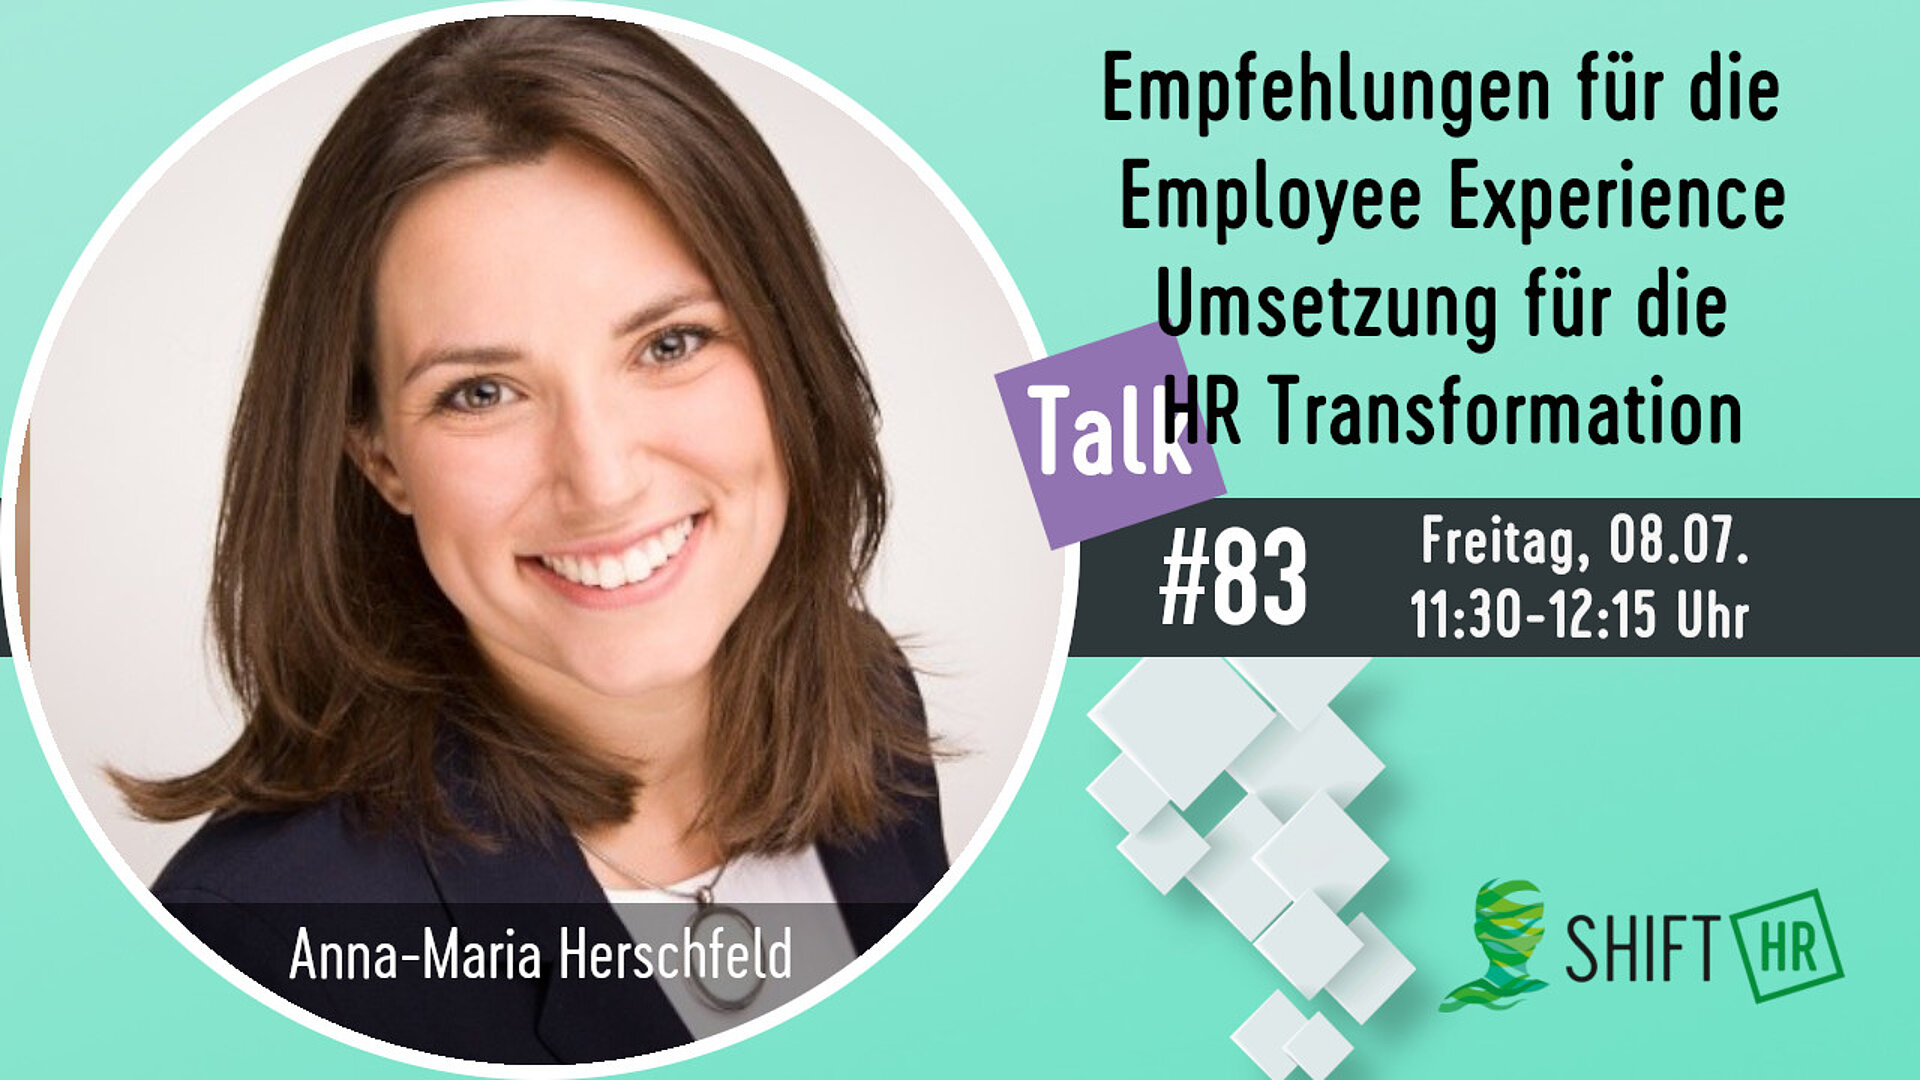 Im Gespräch mit Anna-Maria Hirschfeld über die Bedeutung der EX für die HR Transformation